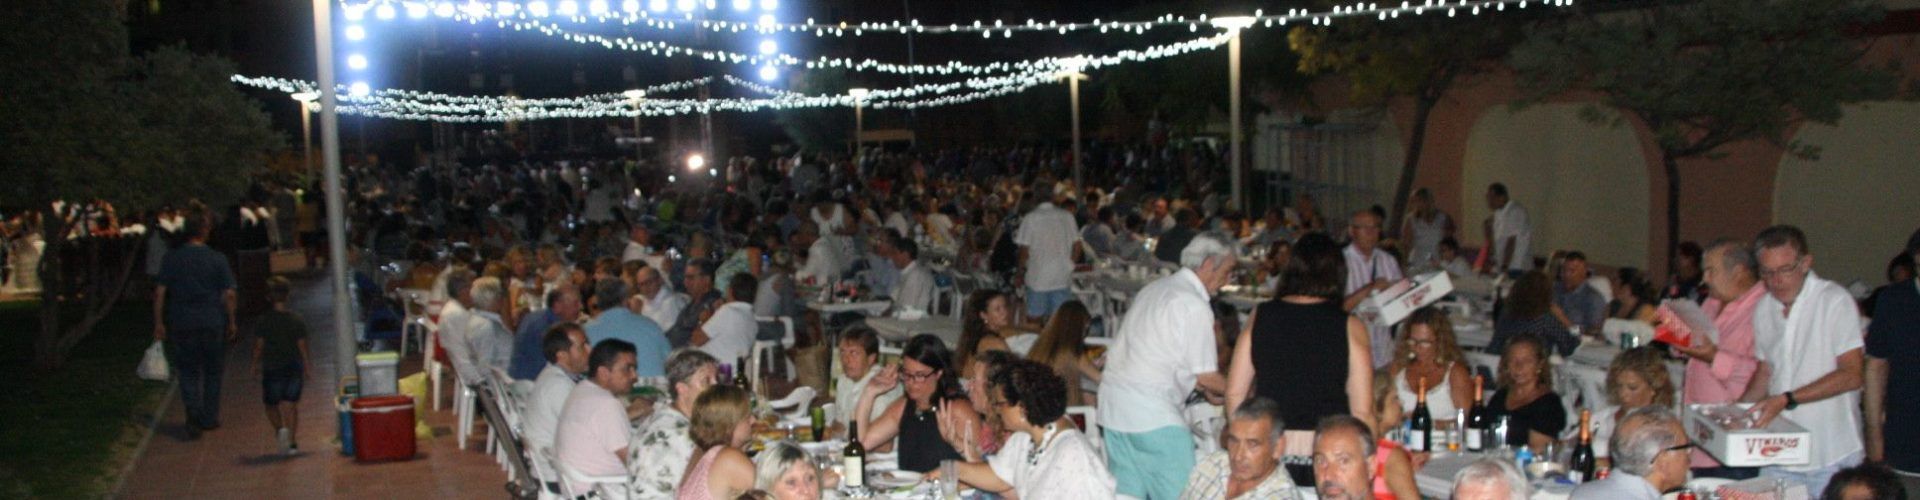 El nou Festival Gastronòmic del Llagostí vol convertir Vinaròs en un punt de referència gastronòmica